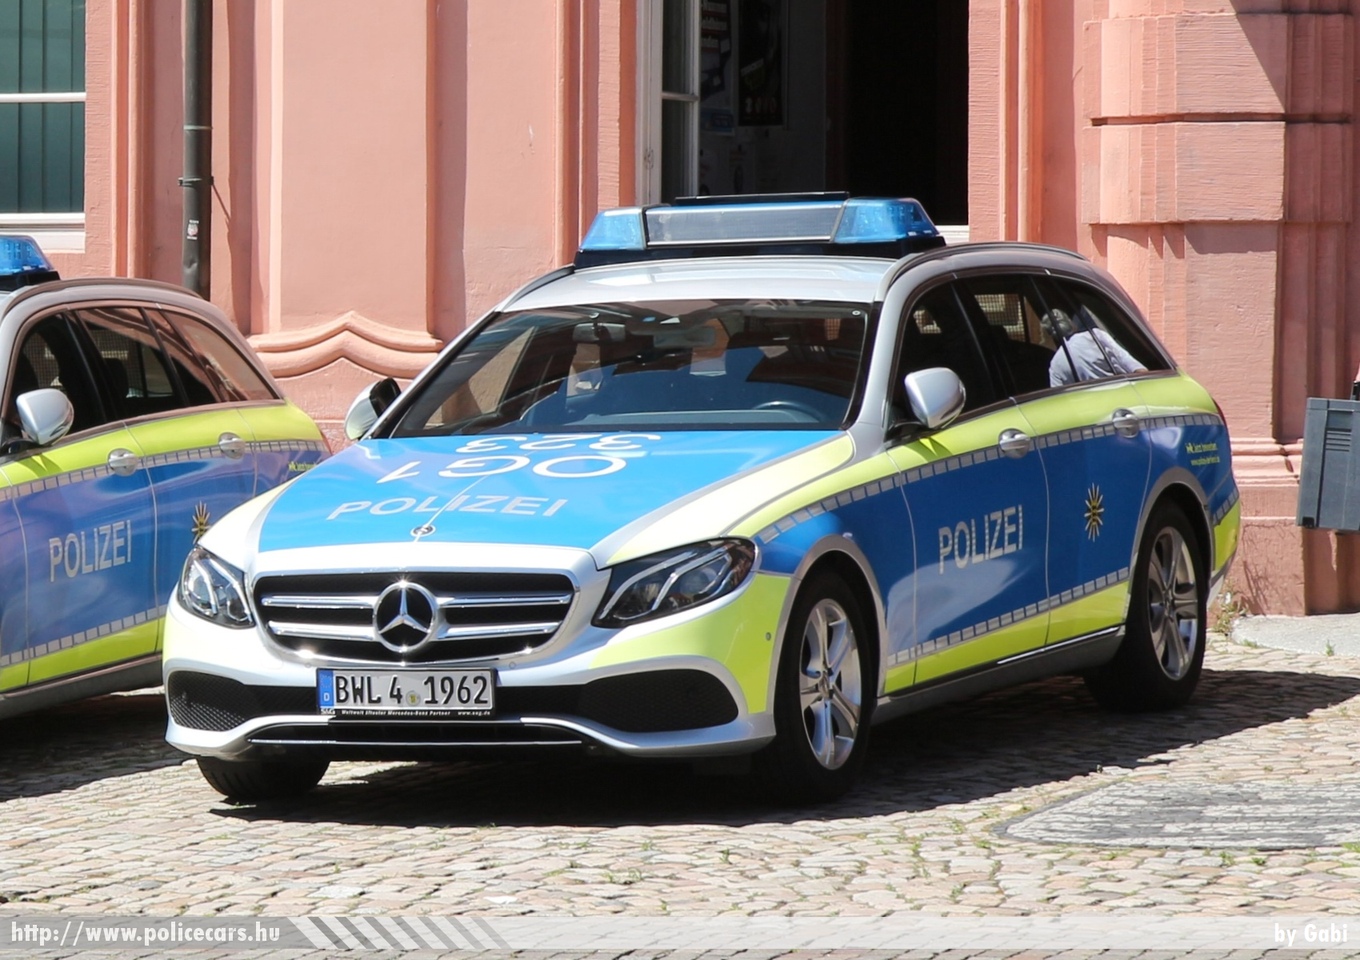 Mercedes E, fotó: Gabi
Keywords: német Németország rendőr rendőrautó rendőrség german Germany police policecar